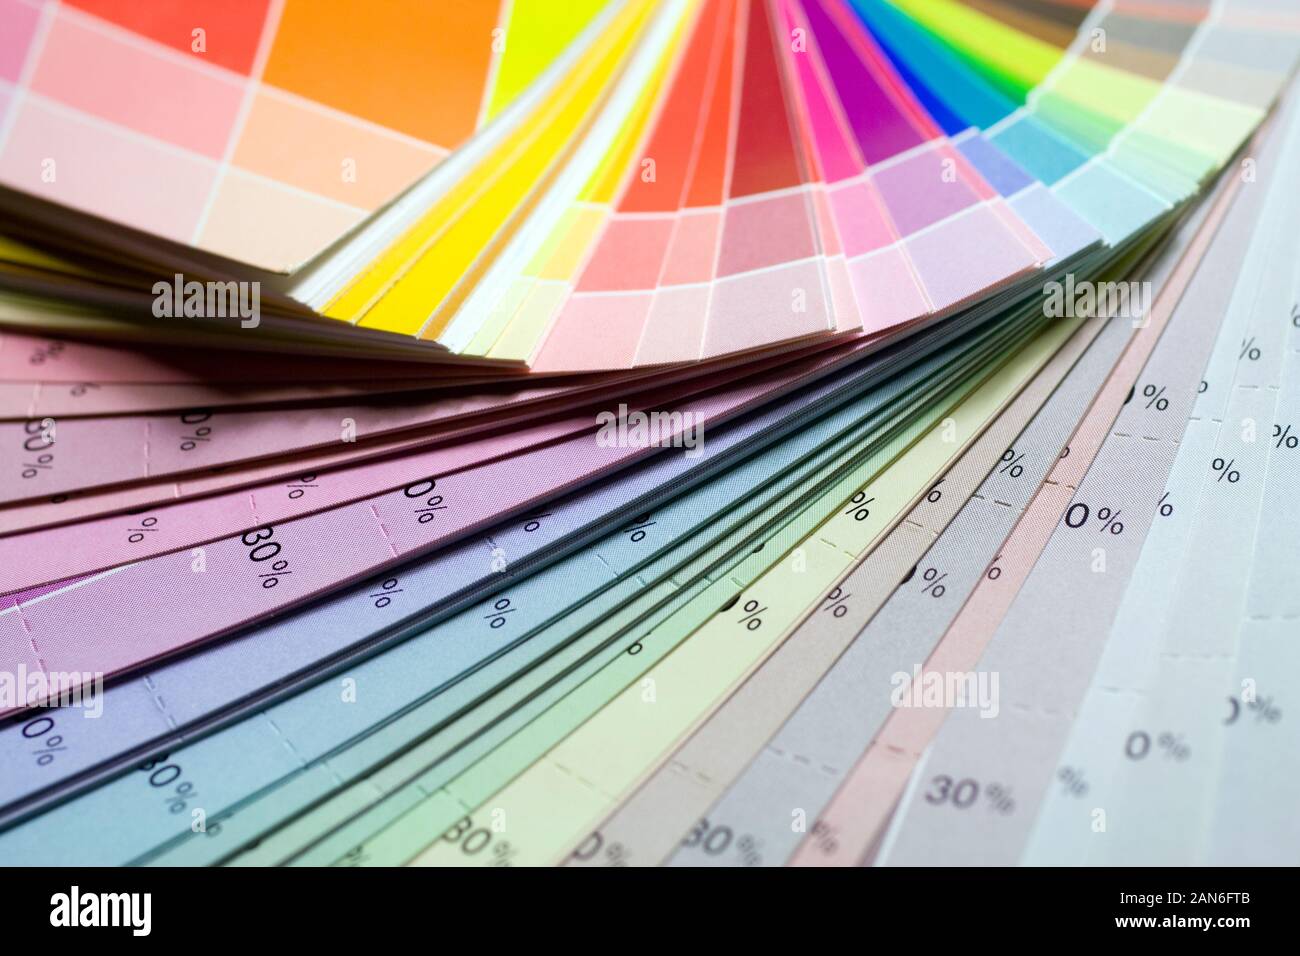 Impression couleur pantone offset de statistiques. Banque D'Images